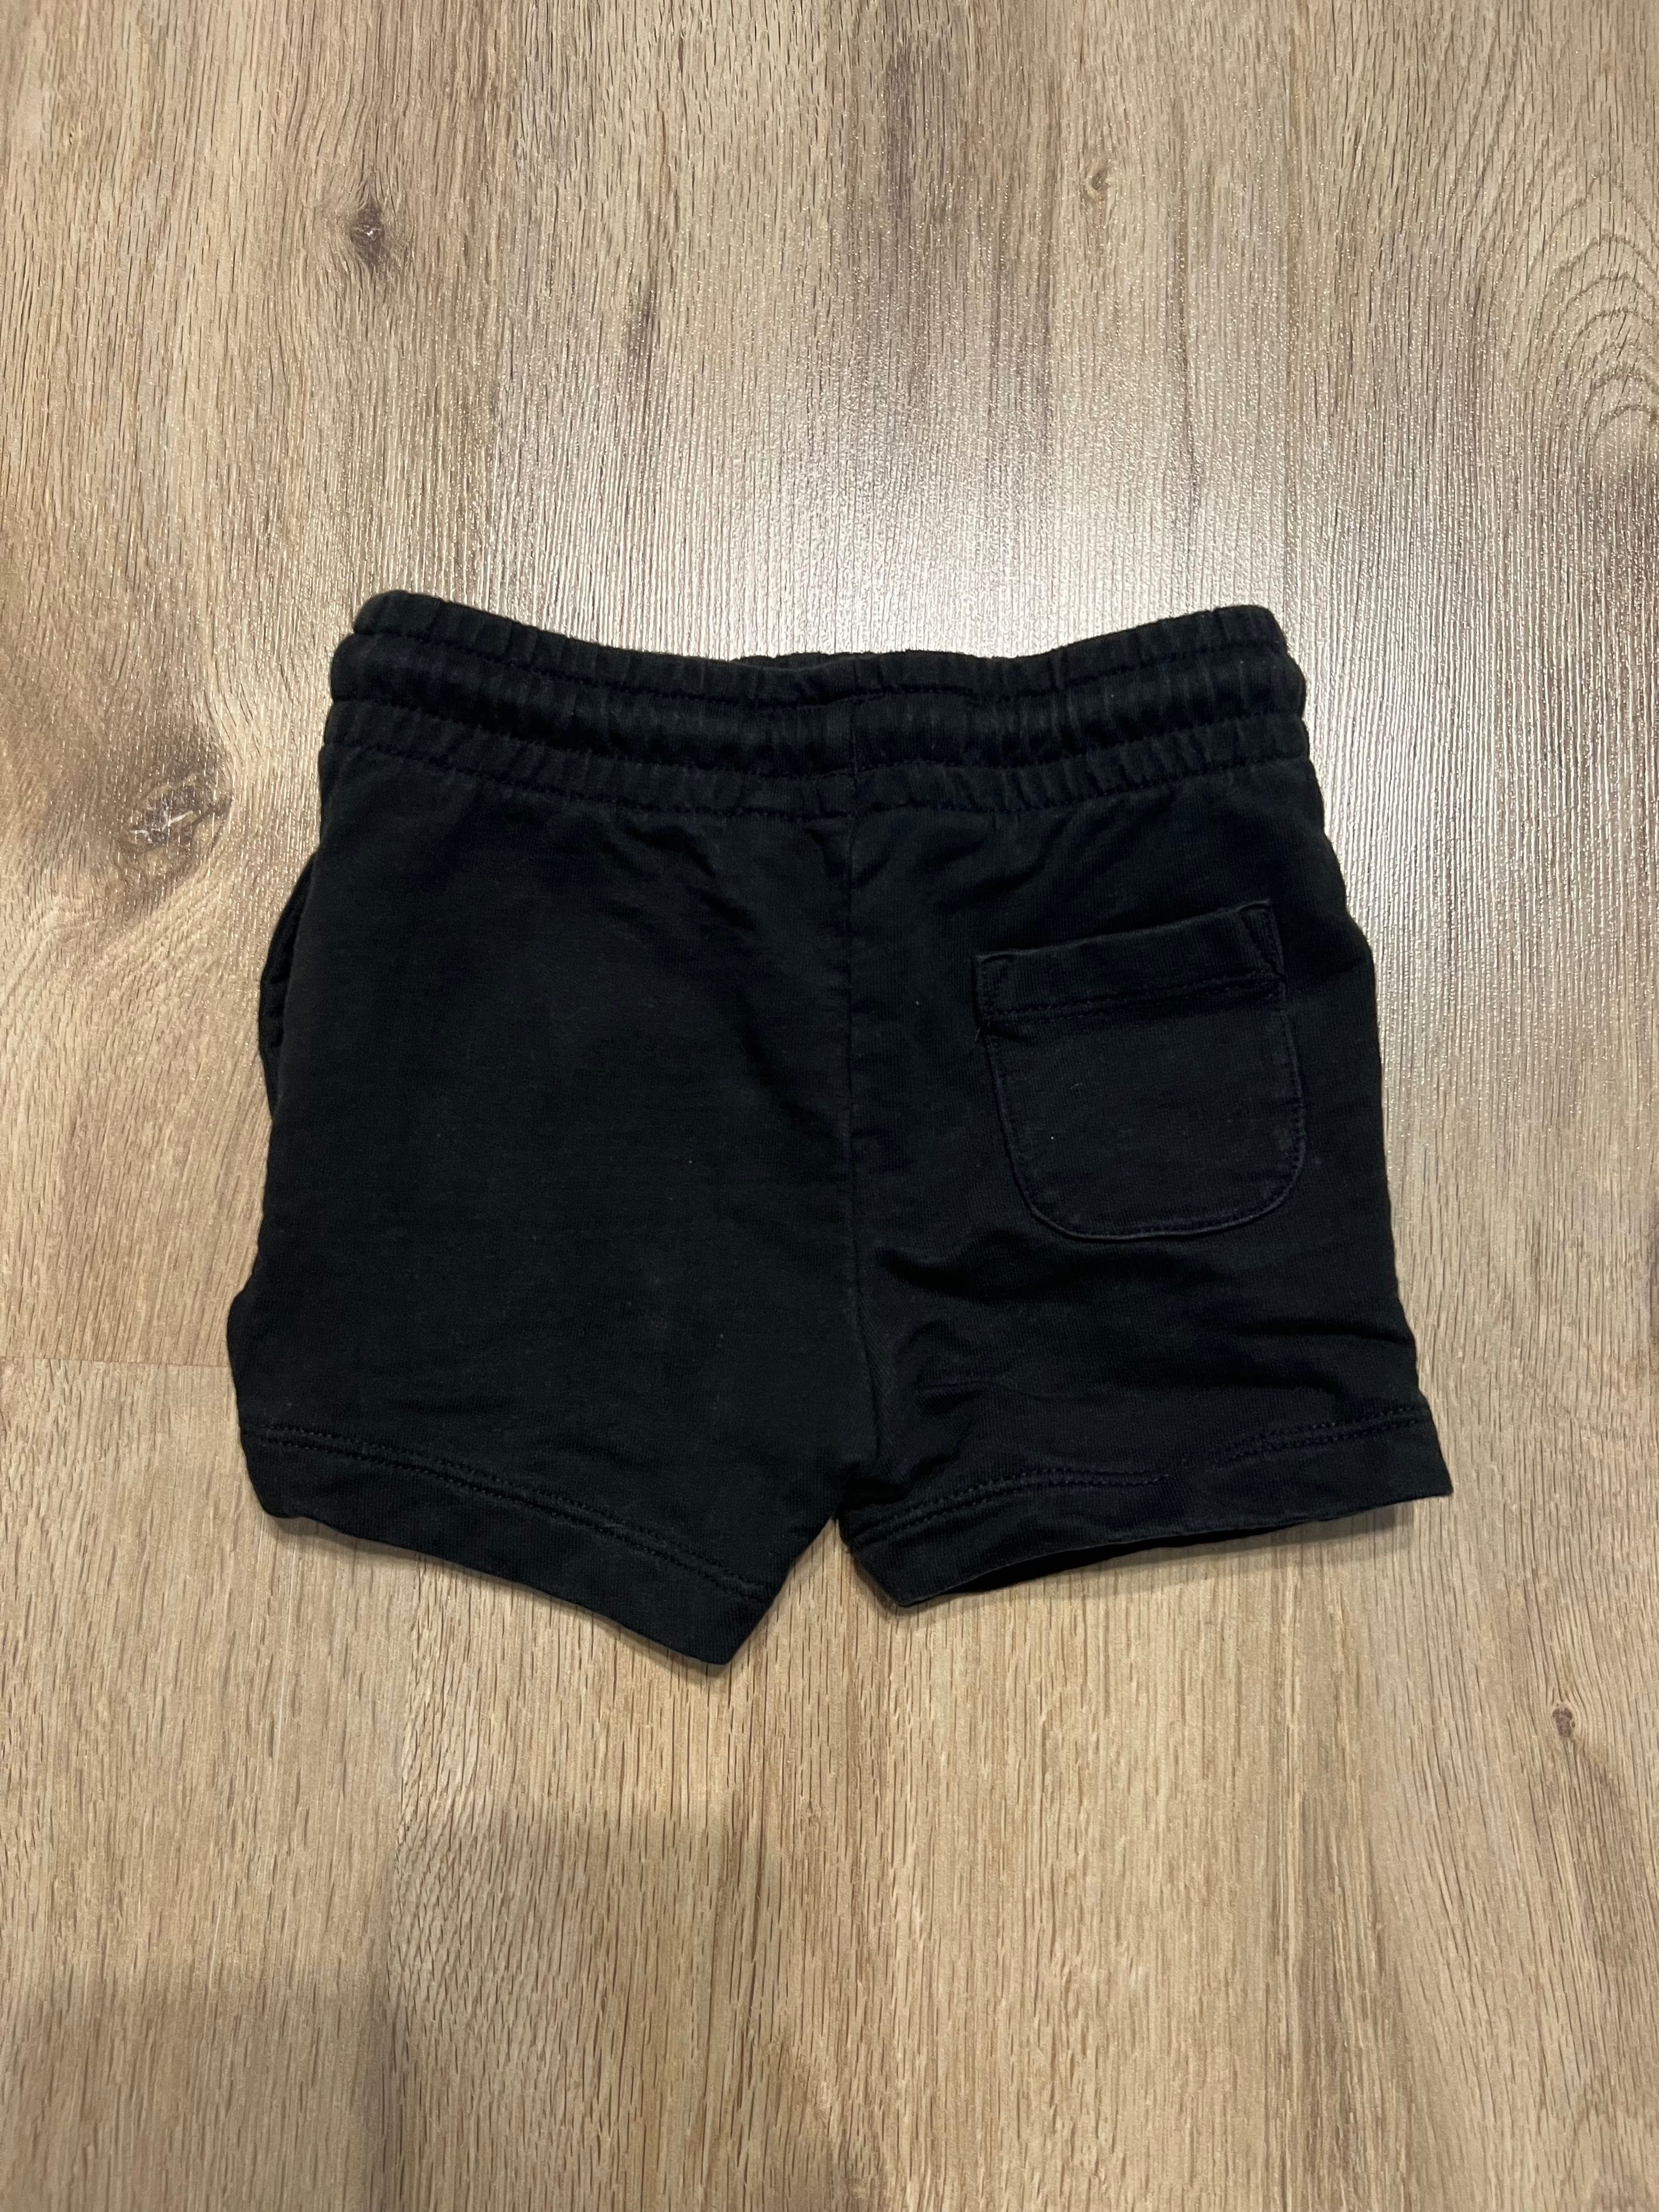 Set 4 pantaloni scurti NEXT, marime 9-12 luni (80)